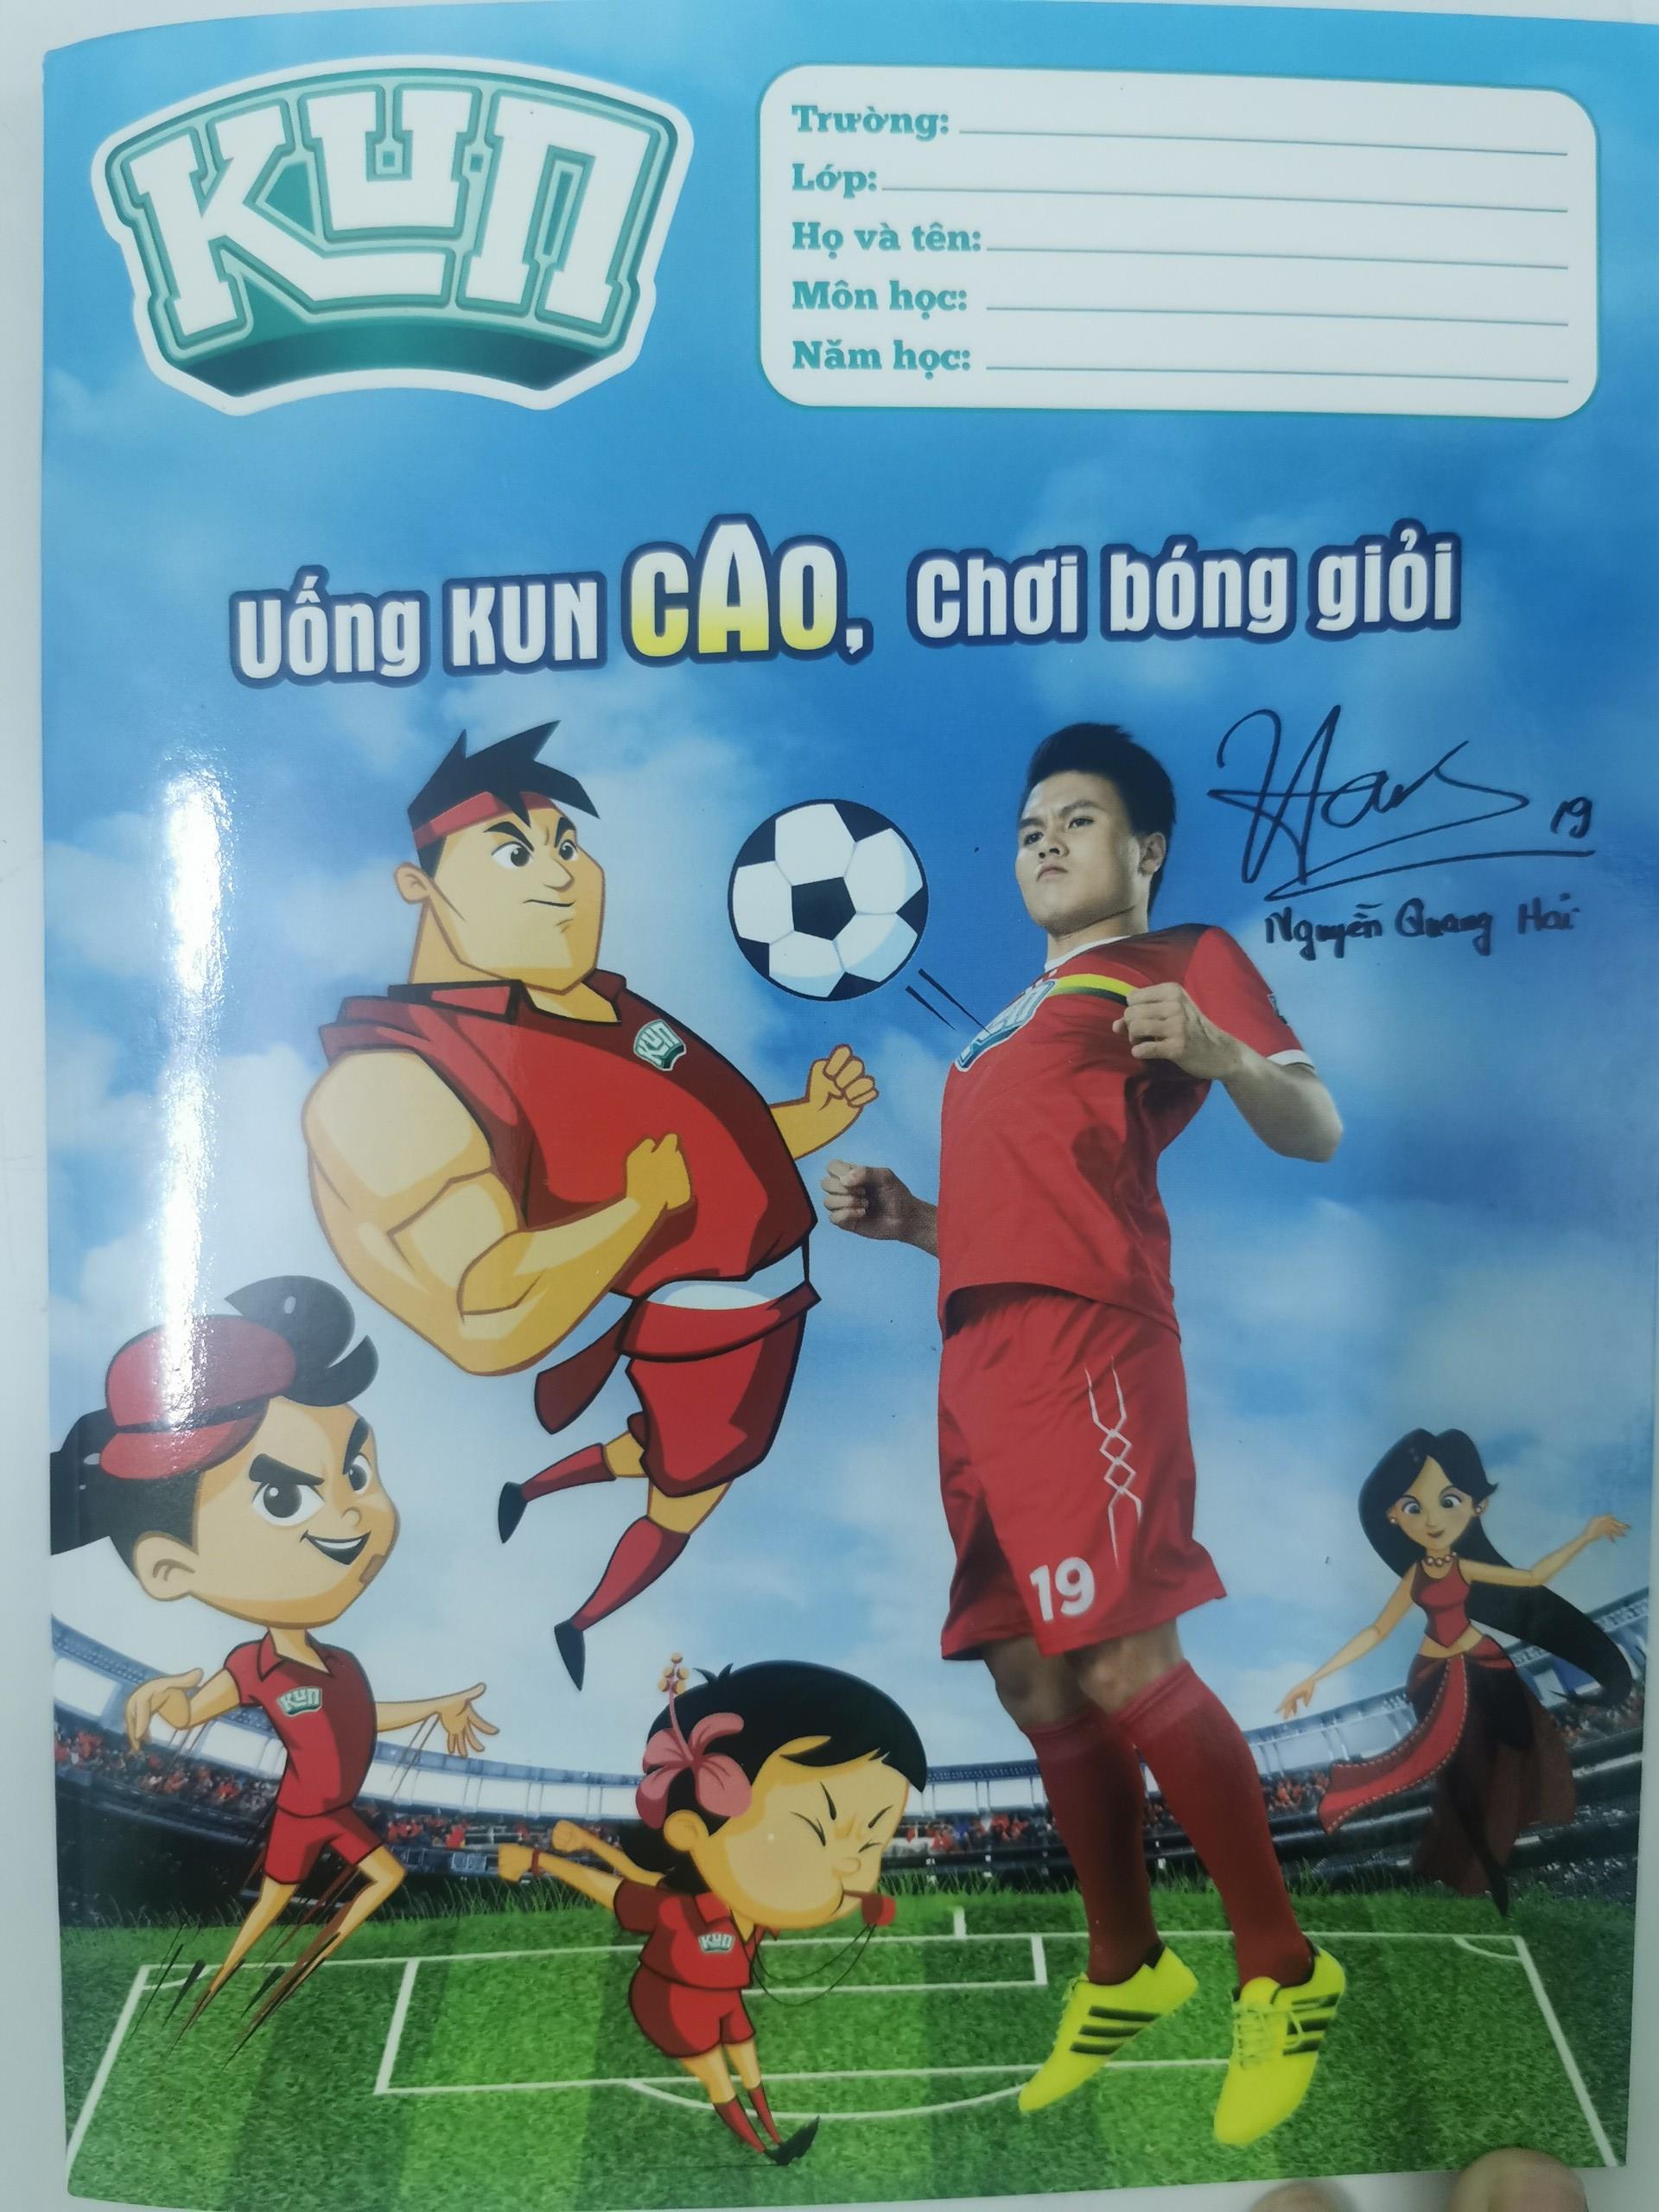 Kun hình Quang Hải là một sản phẩm độc đáo mang hình ảnh của siêu sao bóng đá Quang Hải. Không chỉ là một món đồ chơi đáng yêu, mà còn mang đến niềm đam mê bóng đá cho người xem. Hãy cùng chiêm ngưỡng hình ảnh Kun hình Quang Hải và yêu thương Quang Hải hơn nữa.